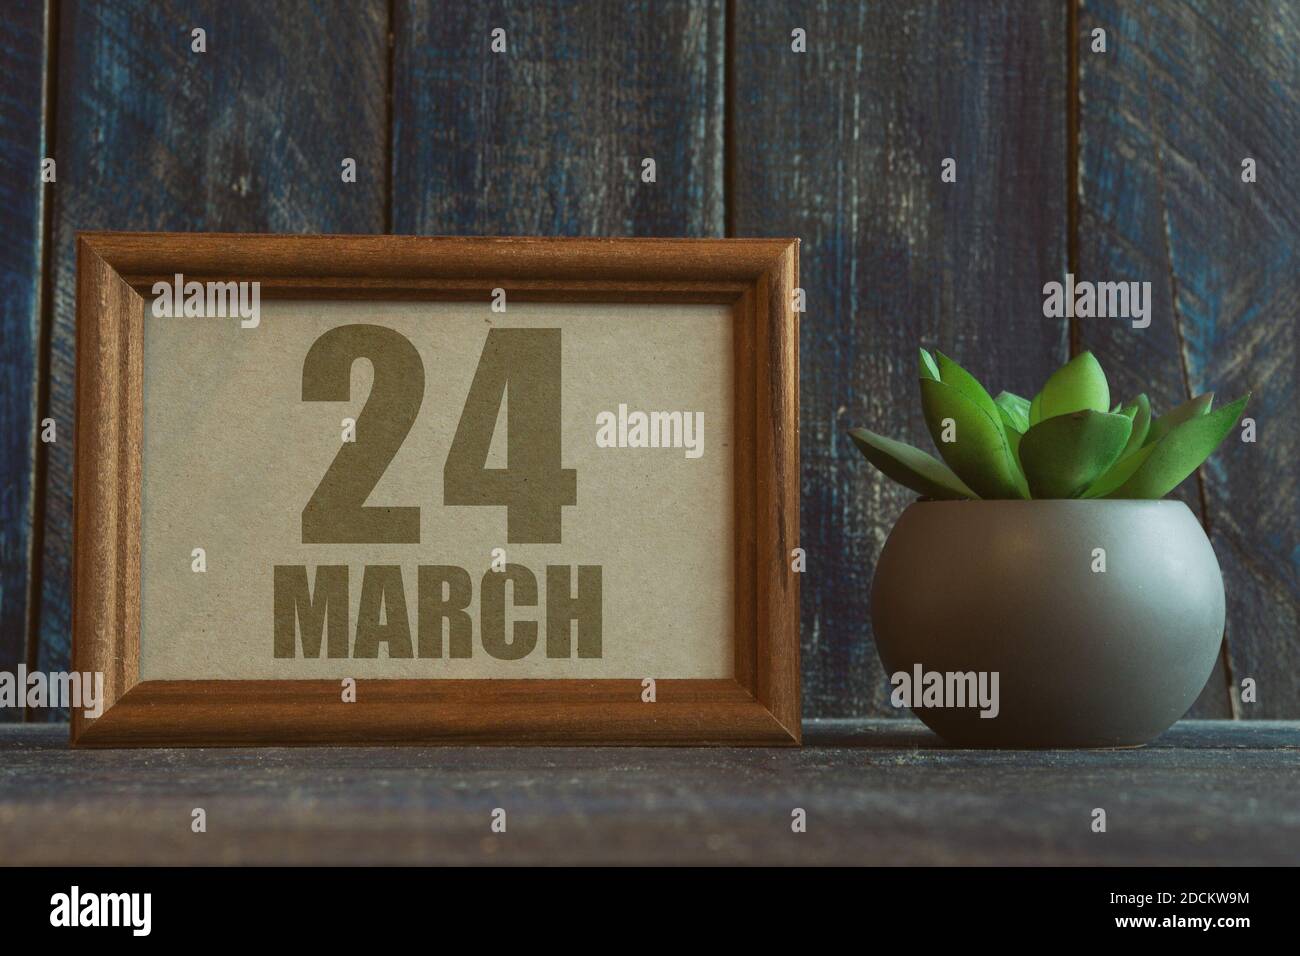 märz 24th. Tag 24 des Monats, Datum im Rahmen neben Sukkulente auf hölzernen Hintergrund Frühlingsmonat, Tag des Jahres Konzept Stockfoto